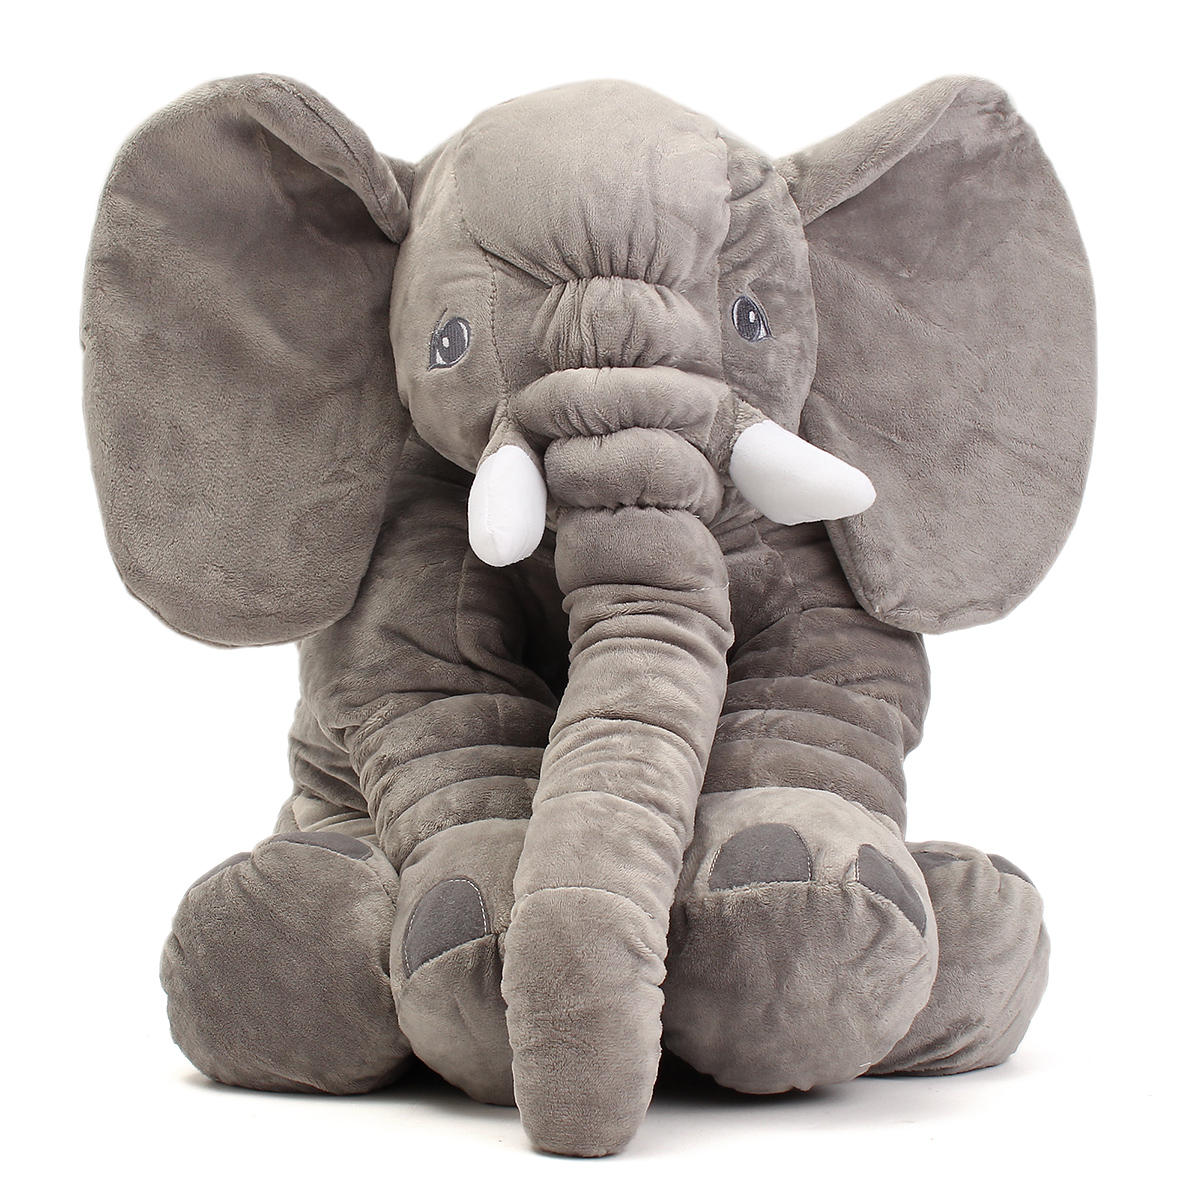 plush elephants in bulk